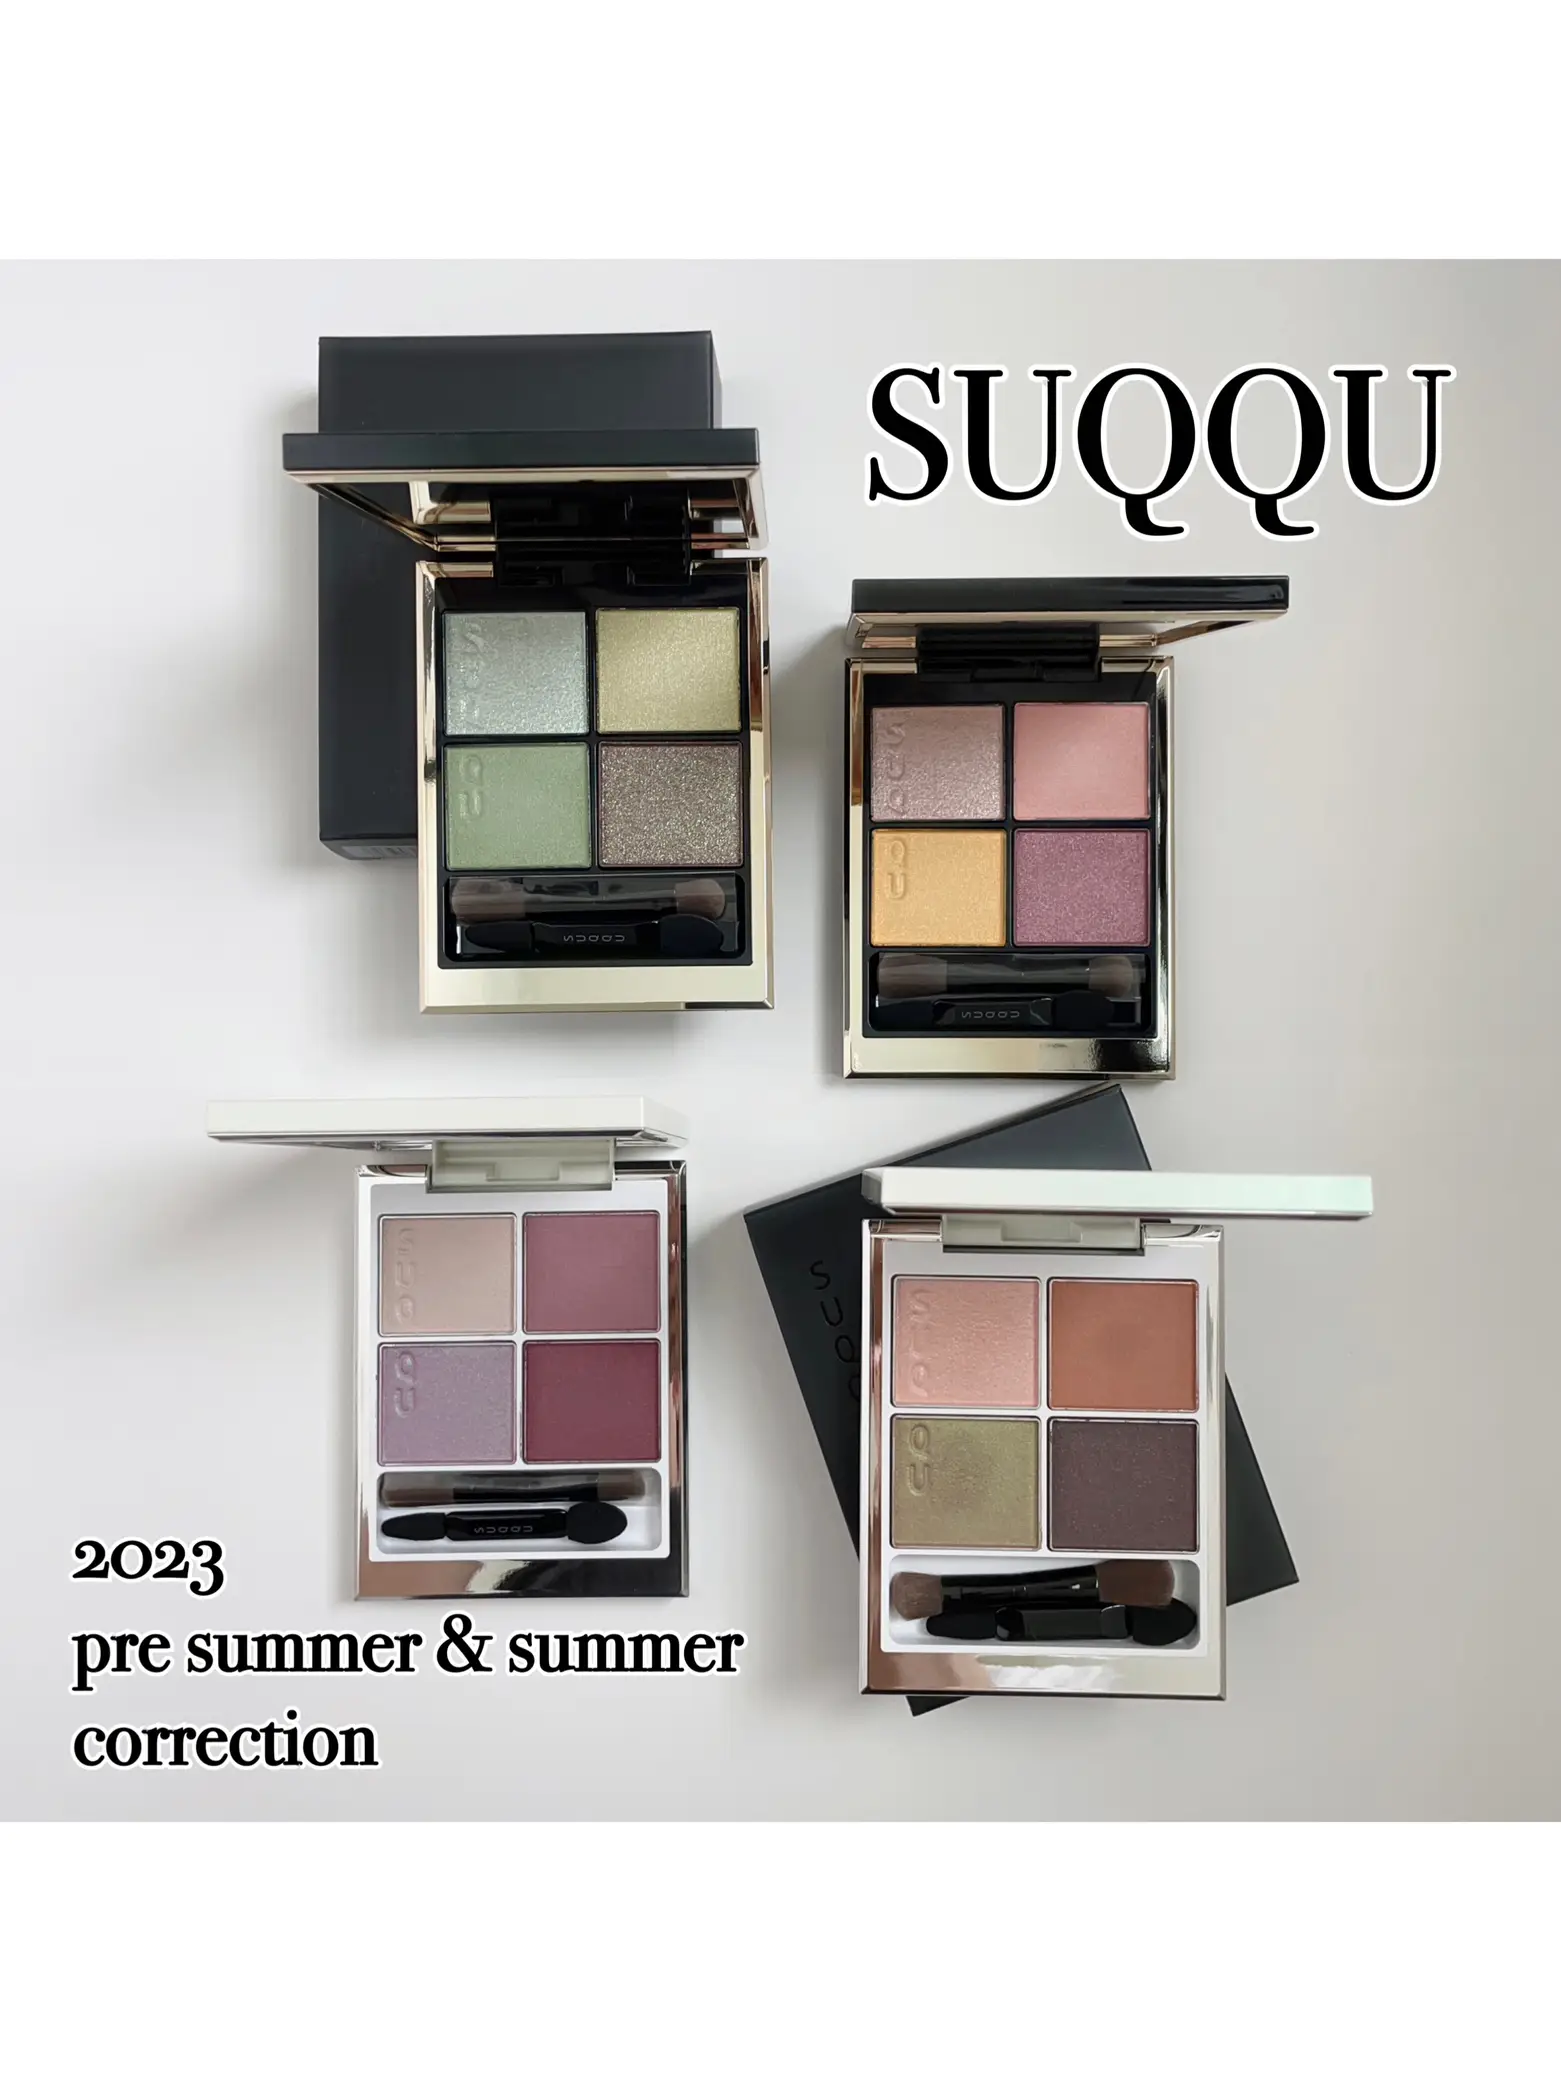 SUQQU購入品❤︎ | 円こす コスメ記録📓🖋️が投稿したフォトブック